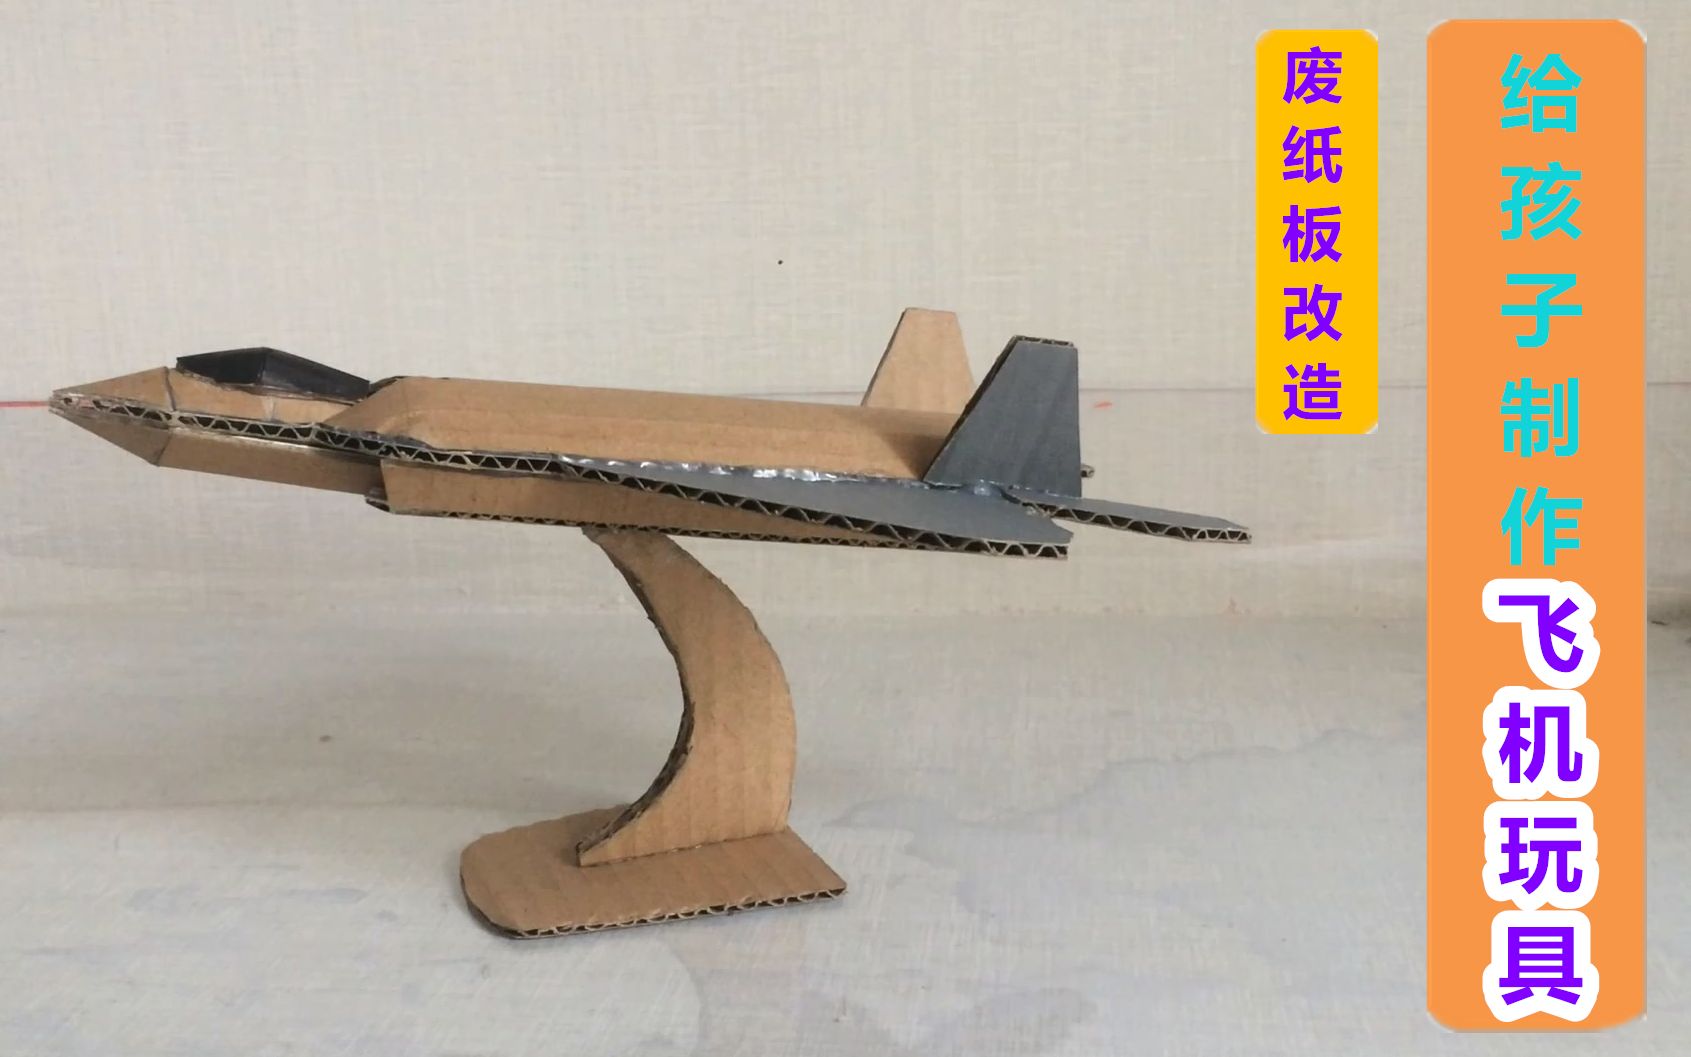 【废纸板改造】用废纸板给孩子制作一个飞机模型玩具!